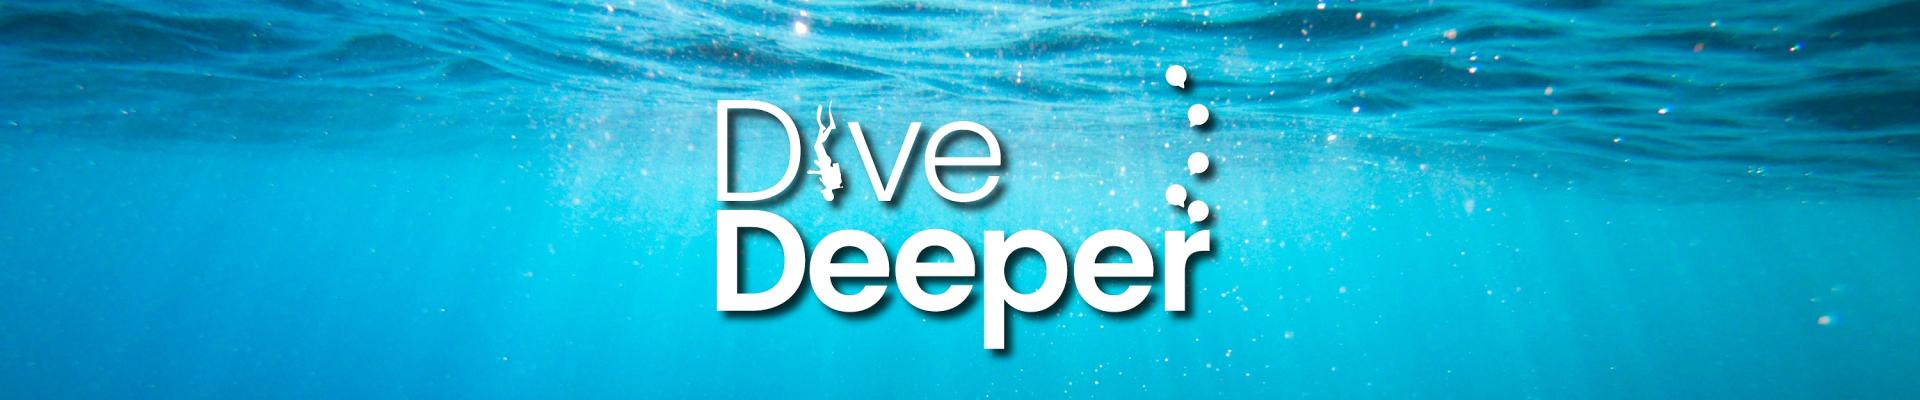 Dive Deeper web banner